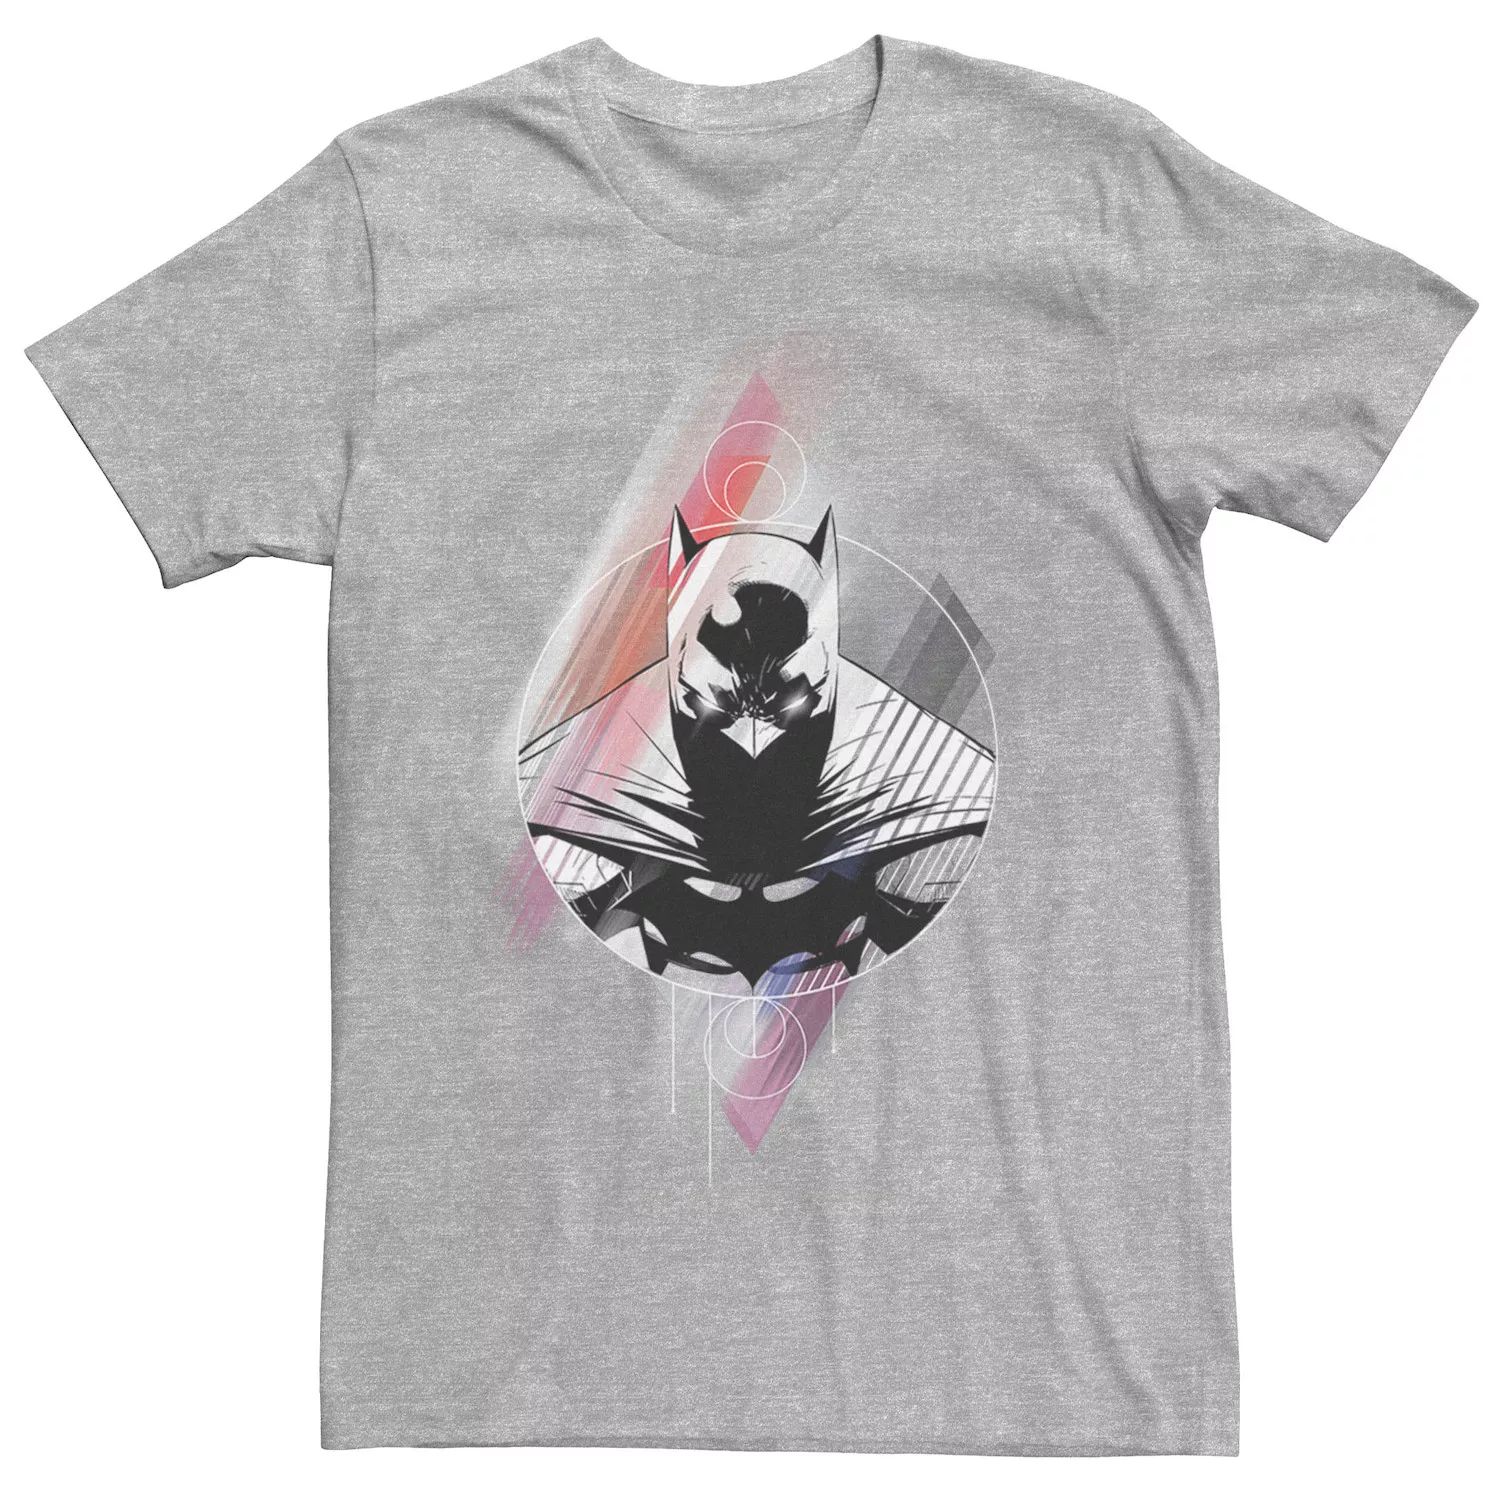 Мужская футболка с бриллиантами Бэтмена DC Comics